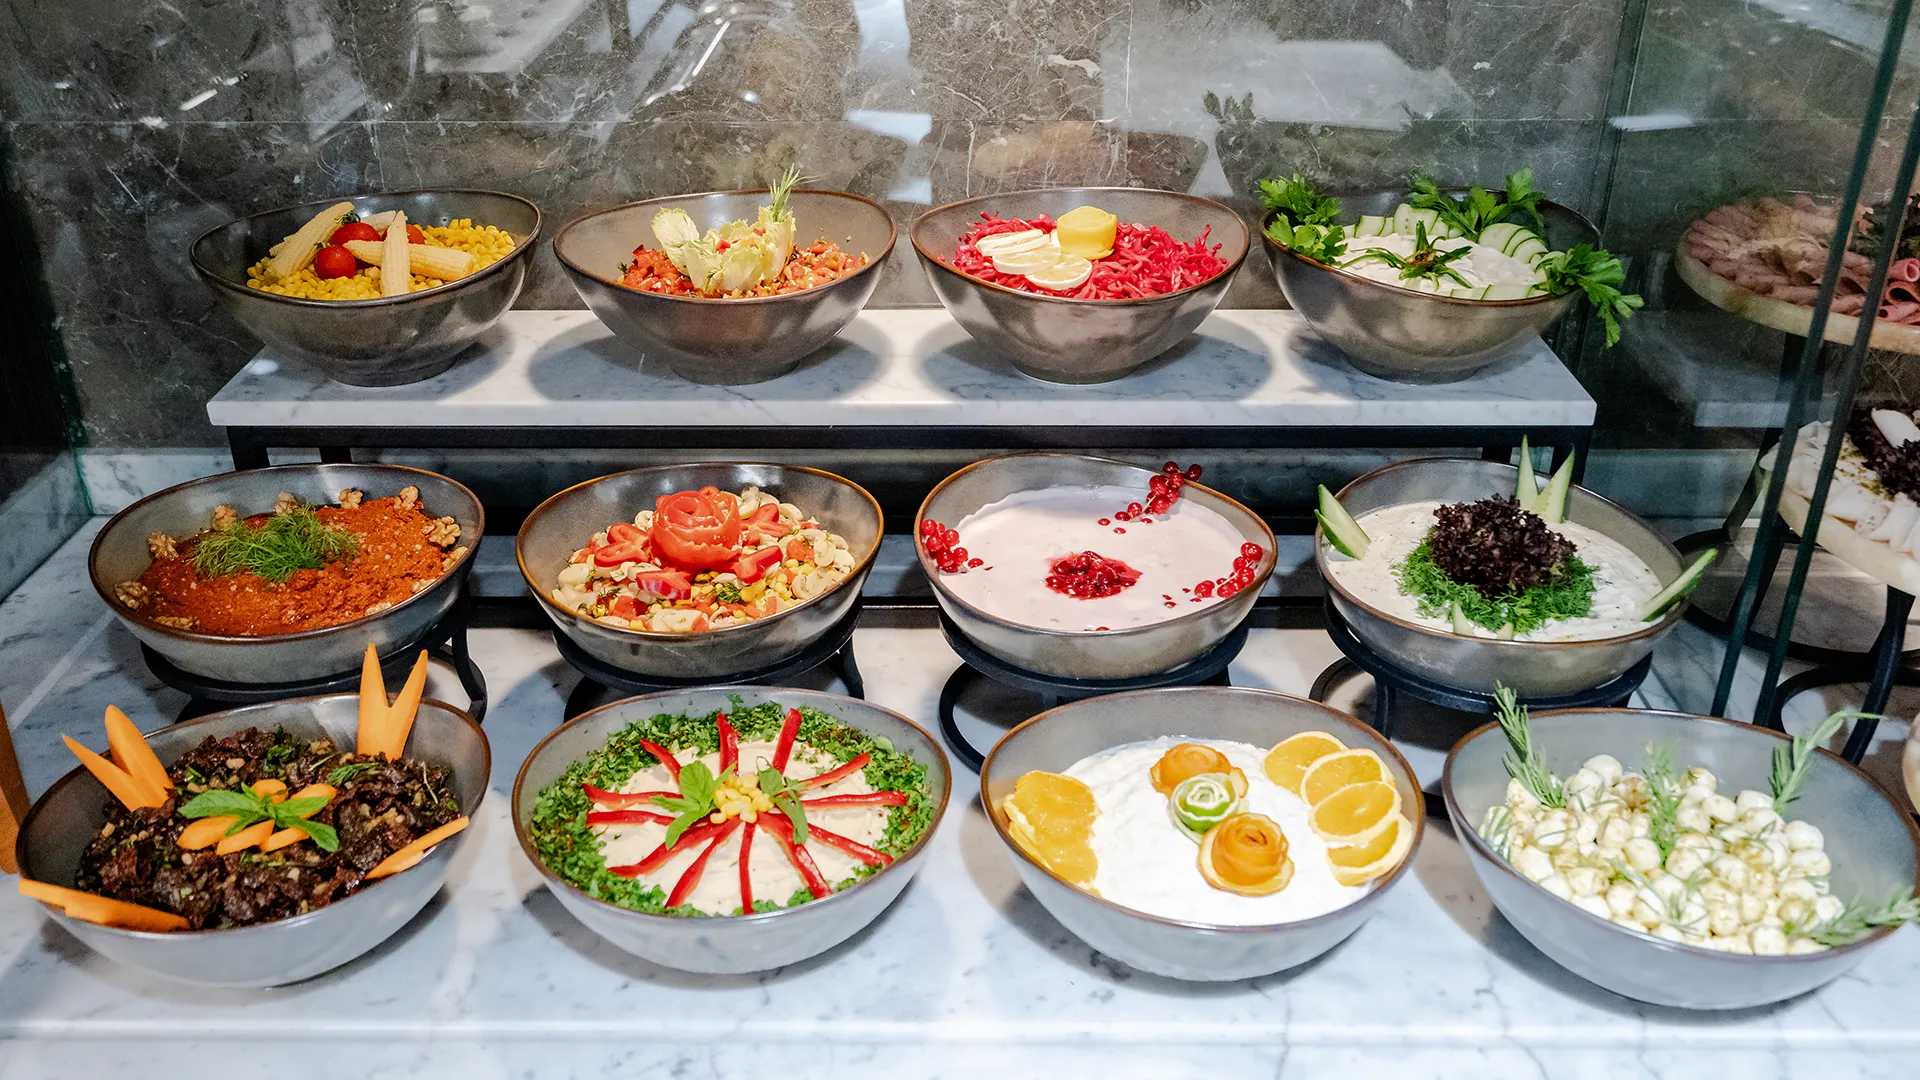 Verschiedene Schalen mit Essen sind in einem Frühstücksbuffet ausgestellt.